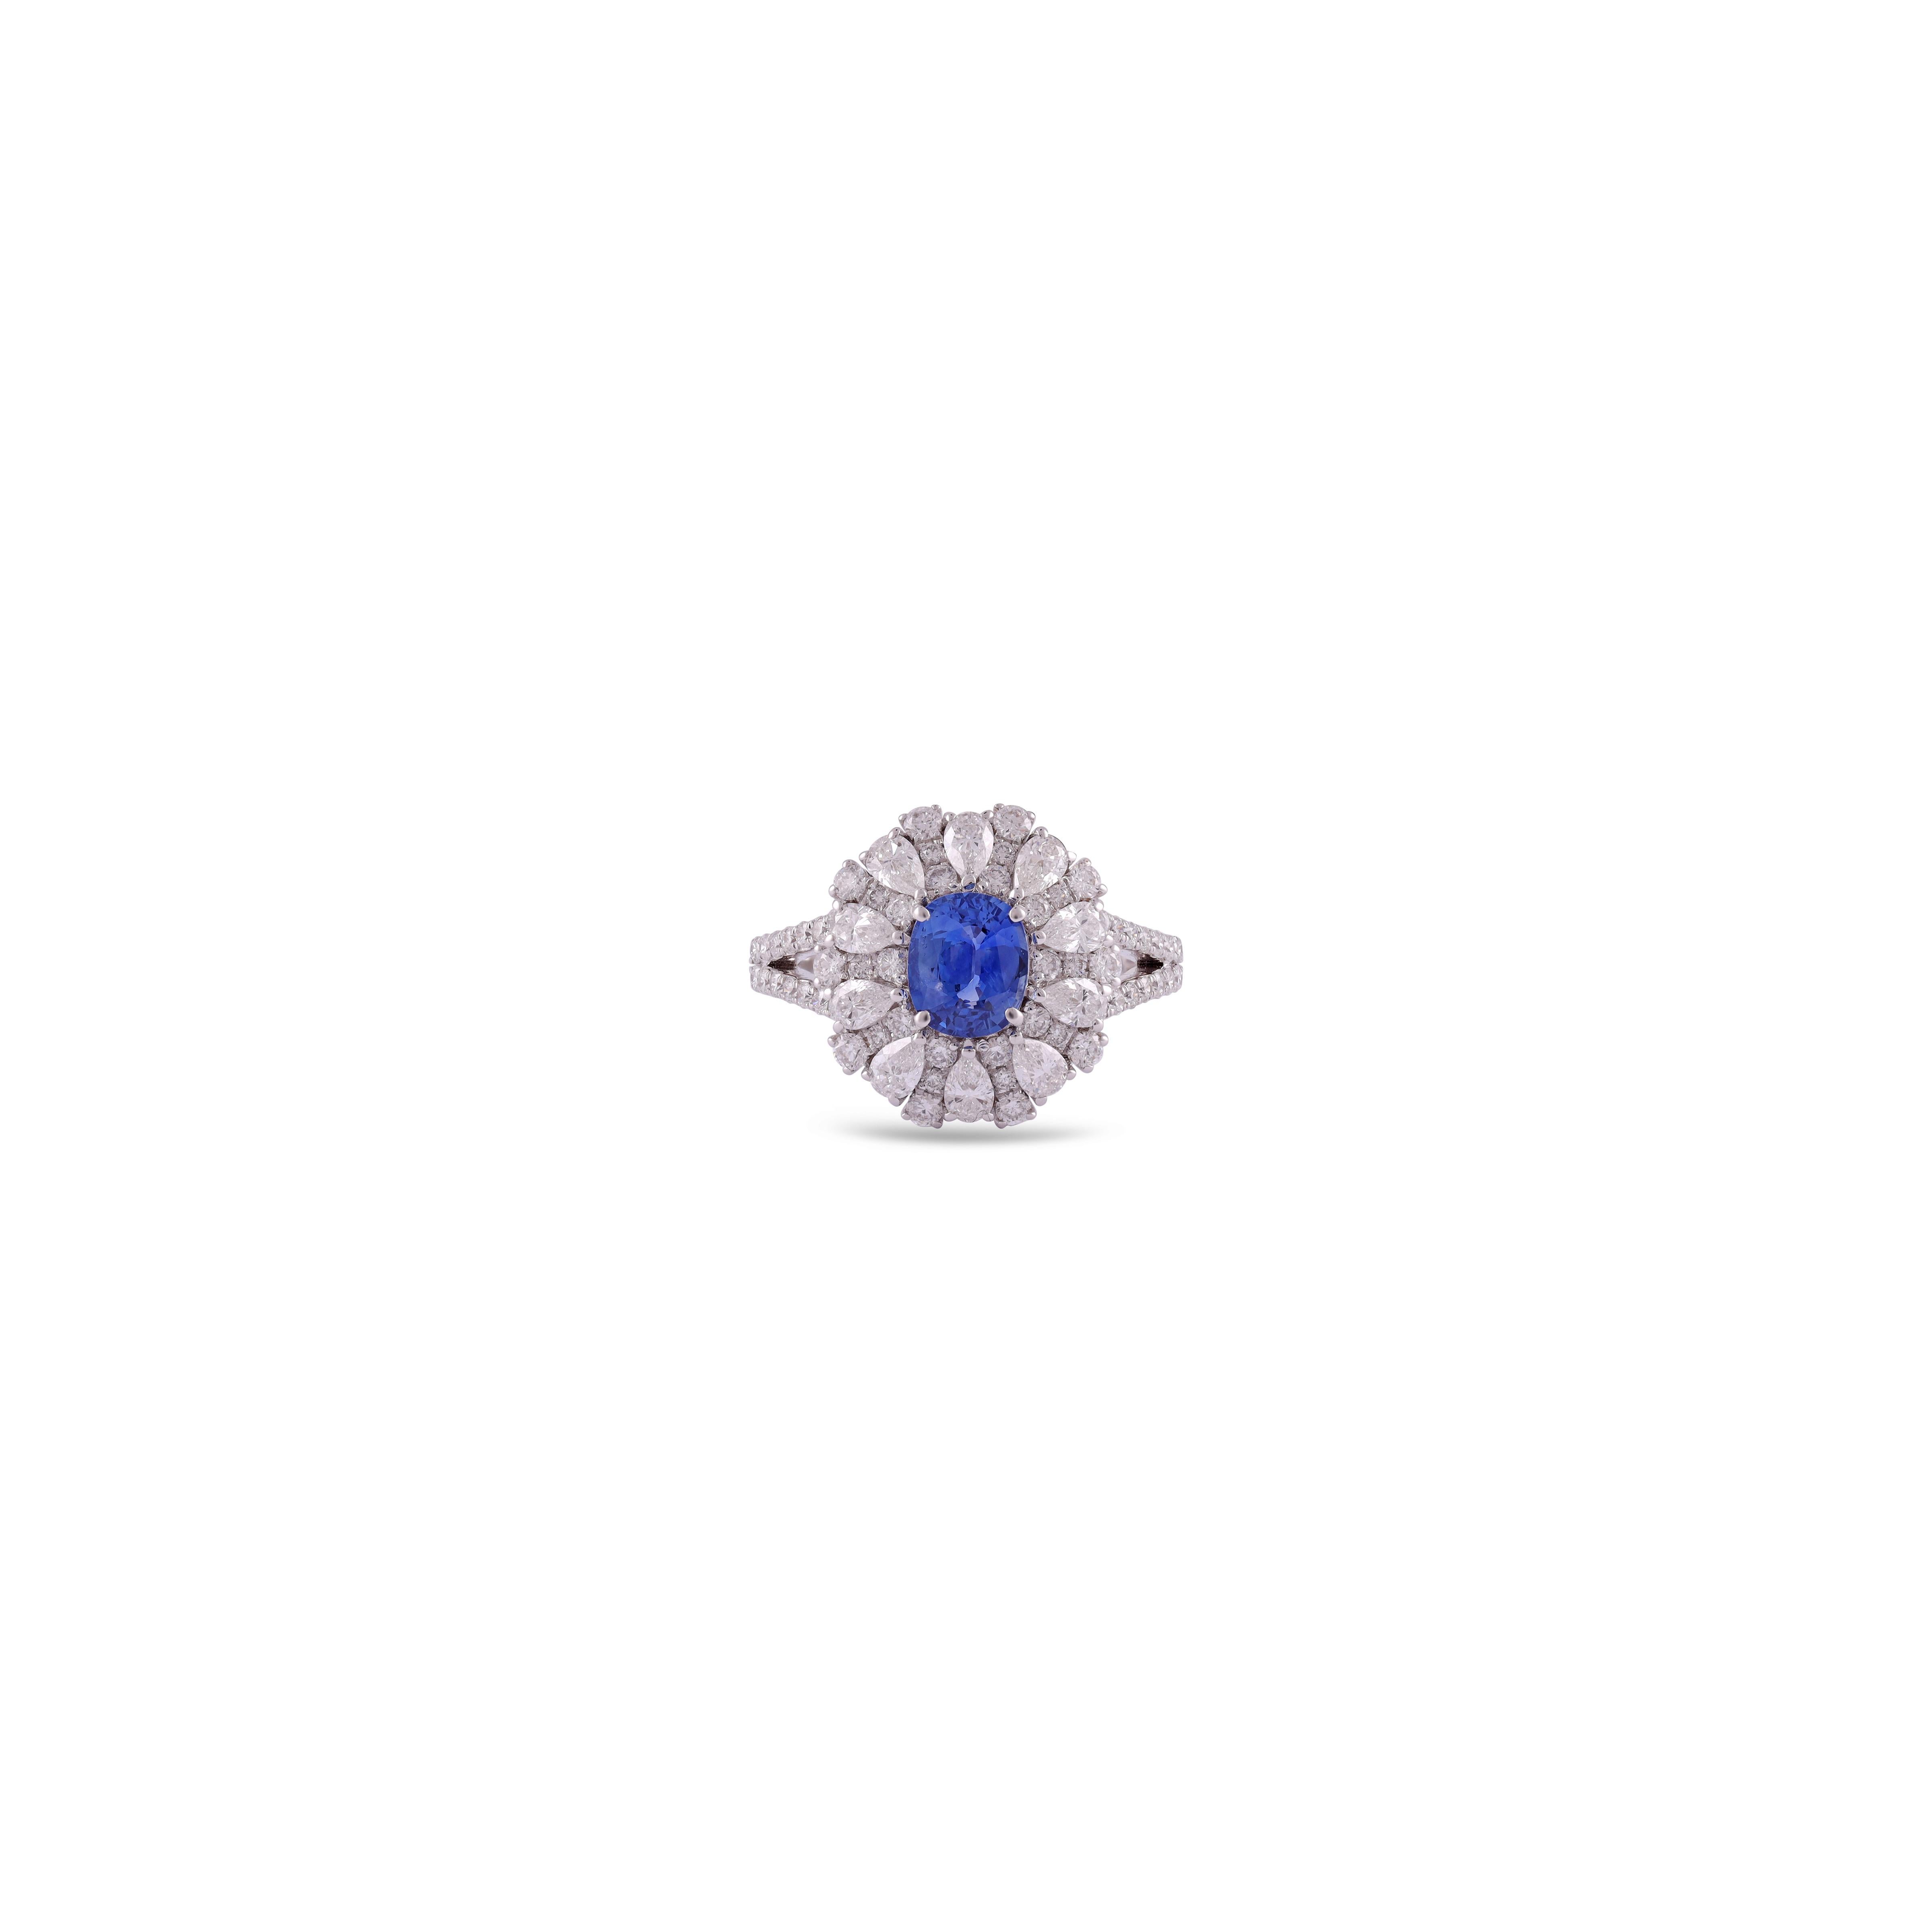 Saphir bleu - 1,13 carat
Diamant - 1,57 carats

Or blanc 18KT